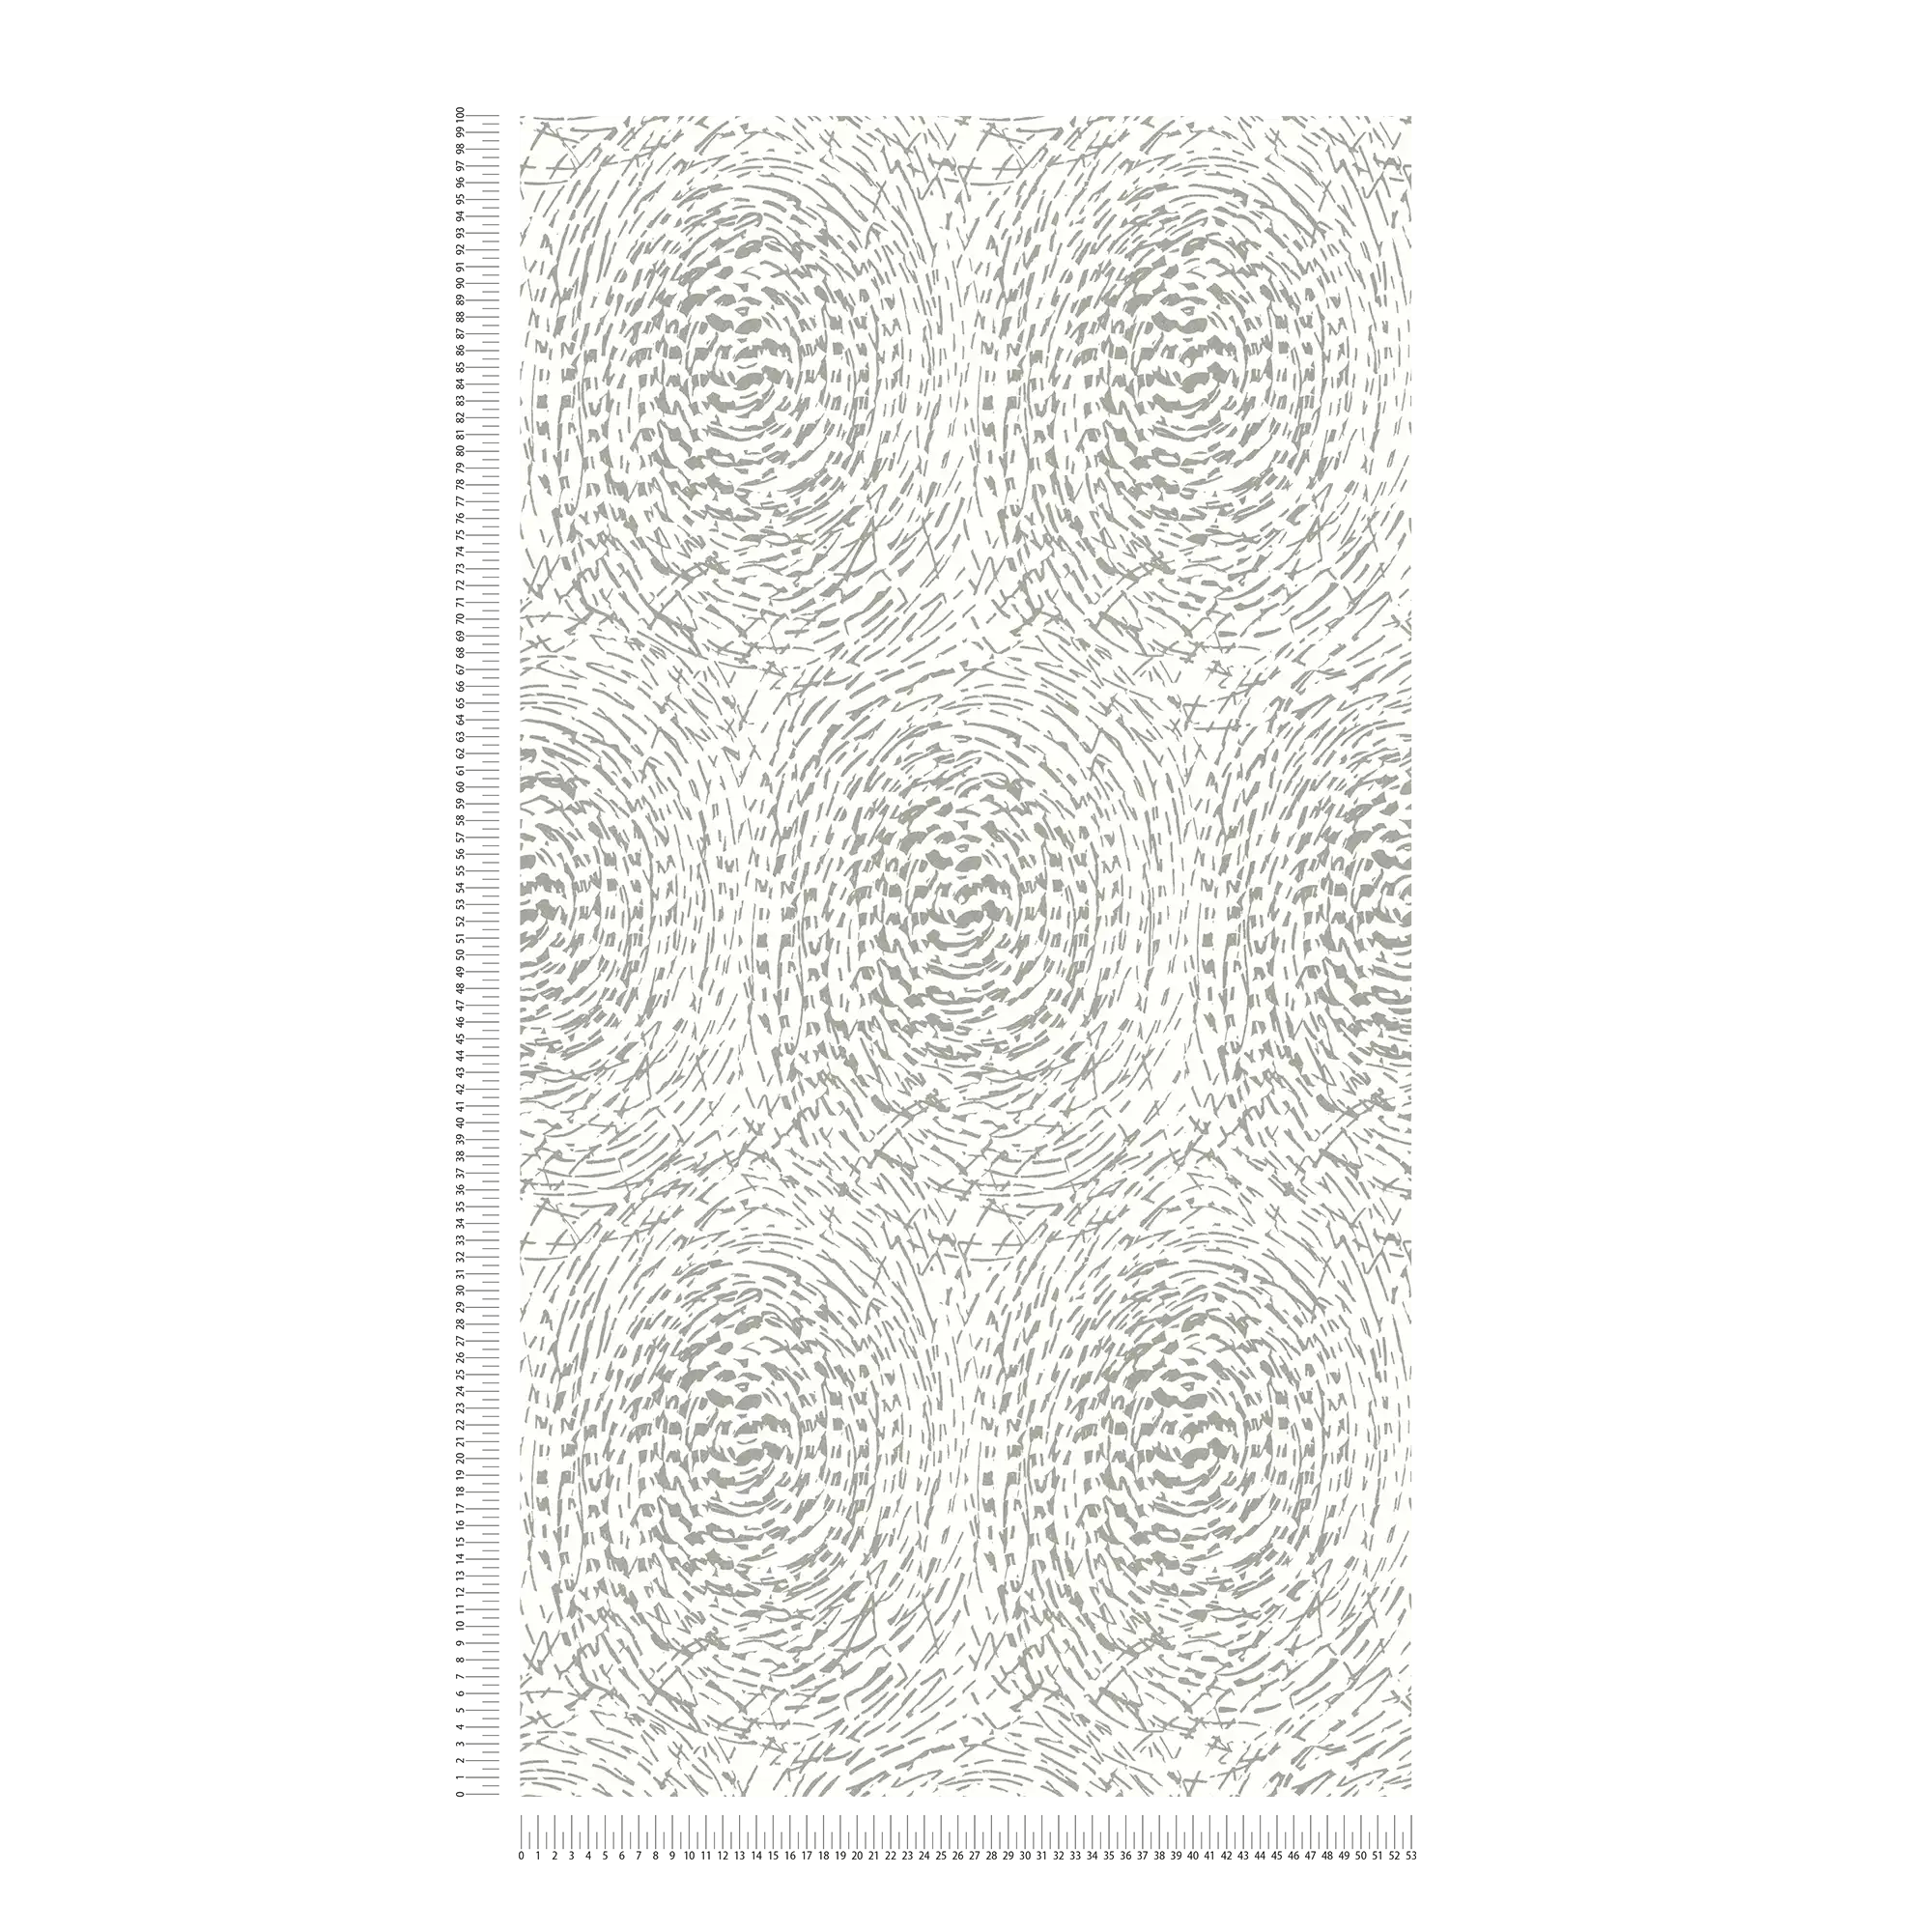             Onderlaag behang etnisch design met metallic kleur & structuur design - zilver, wit
        